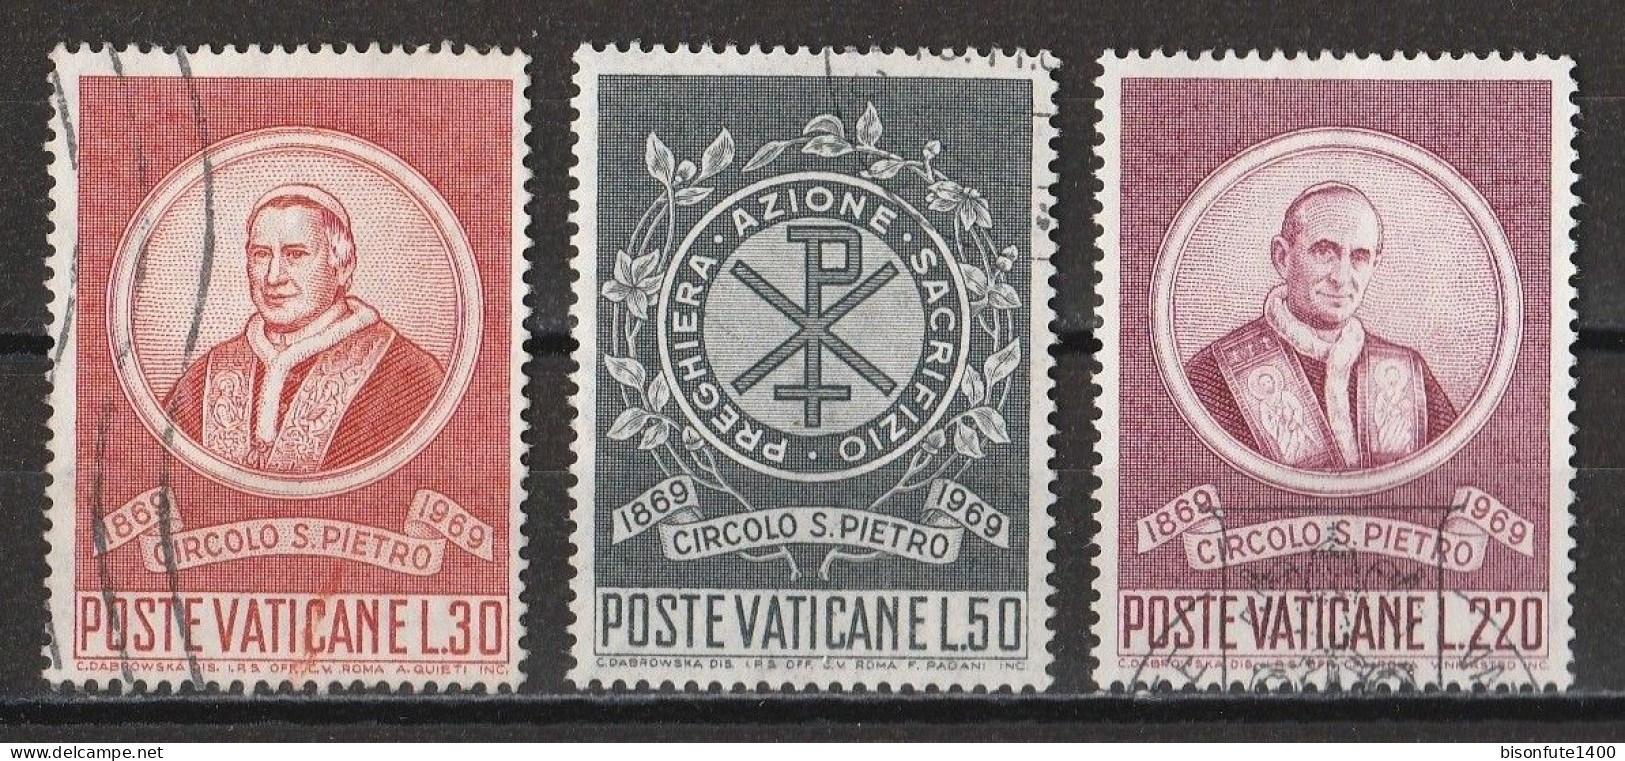 Vatican 1969 : Timbres Yvert & Tellier N° 488 - 489 - 491 - 492 - 493 - 494 - 495 Et 496 Oblitérés. - Oblitérés